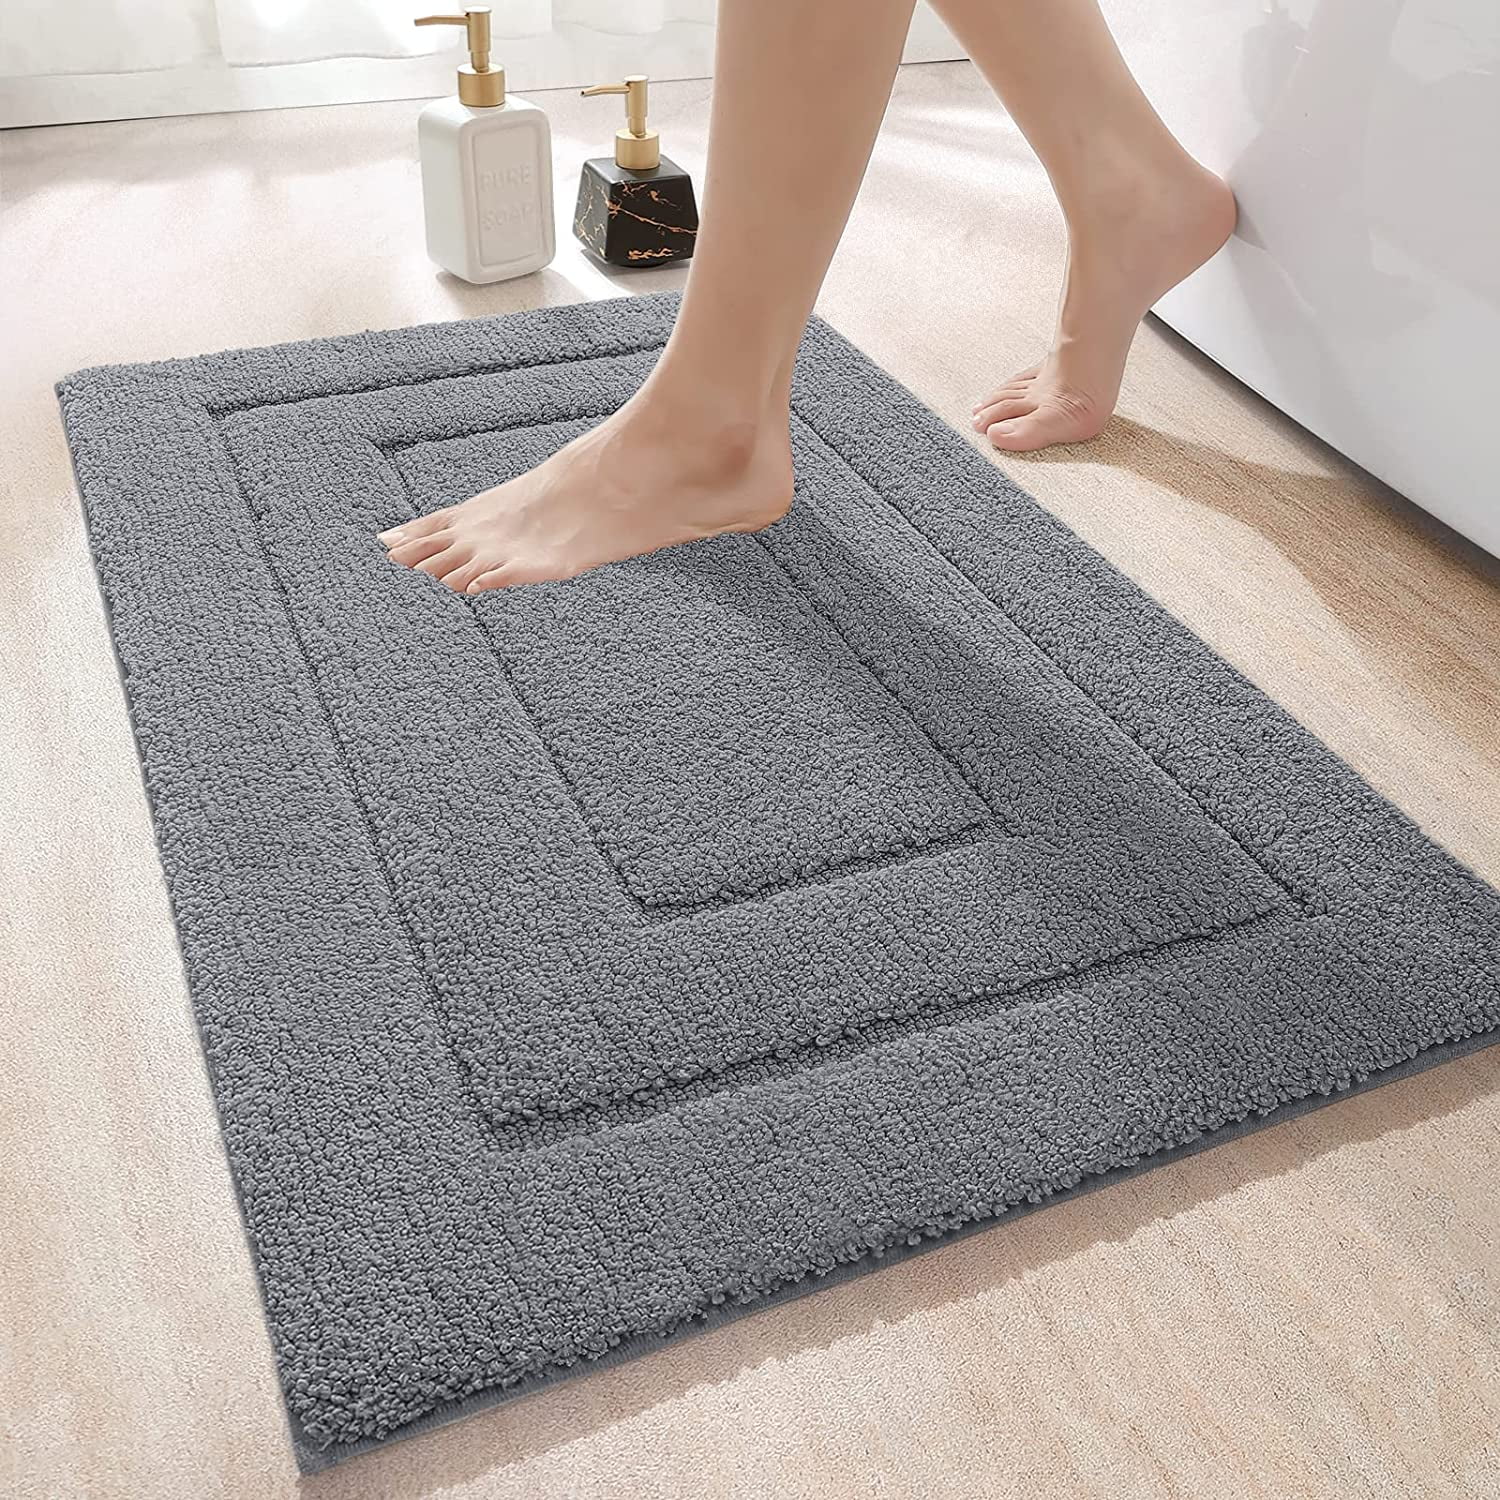 Soft Anti Slip Super Absorbent Rug For Bathroom/Shower Door Floor Mat 50x80cm 